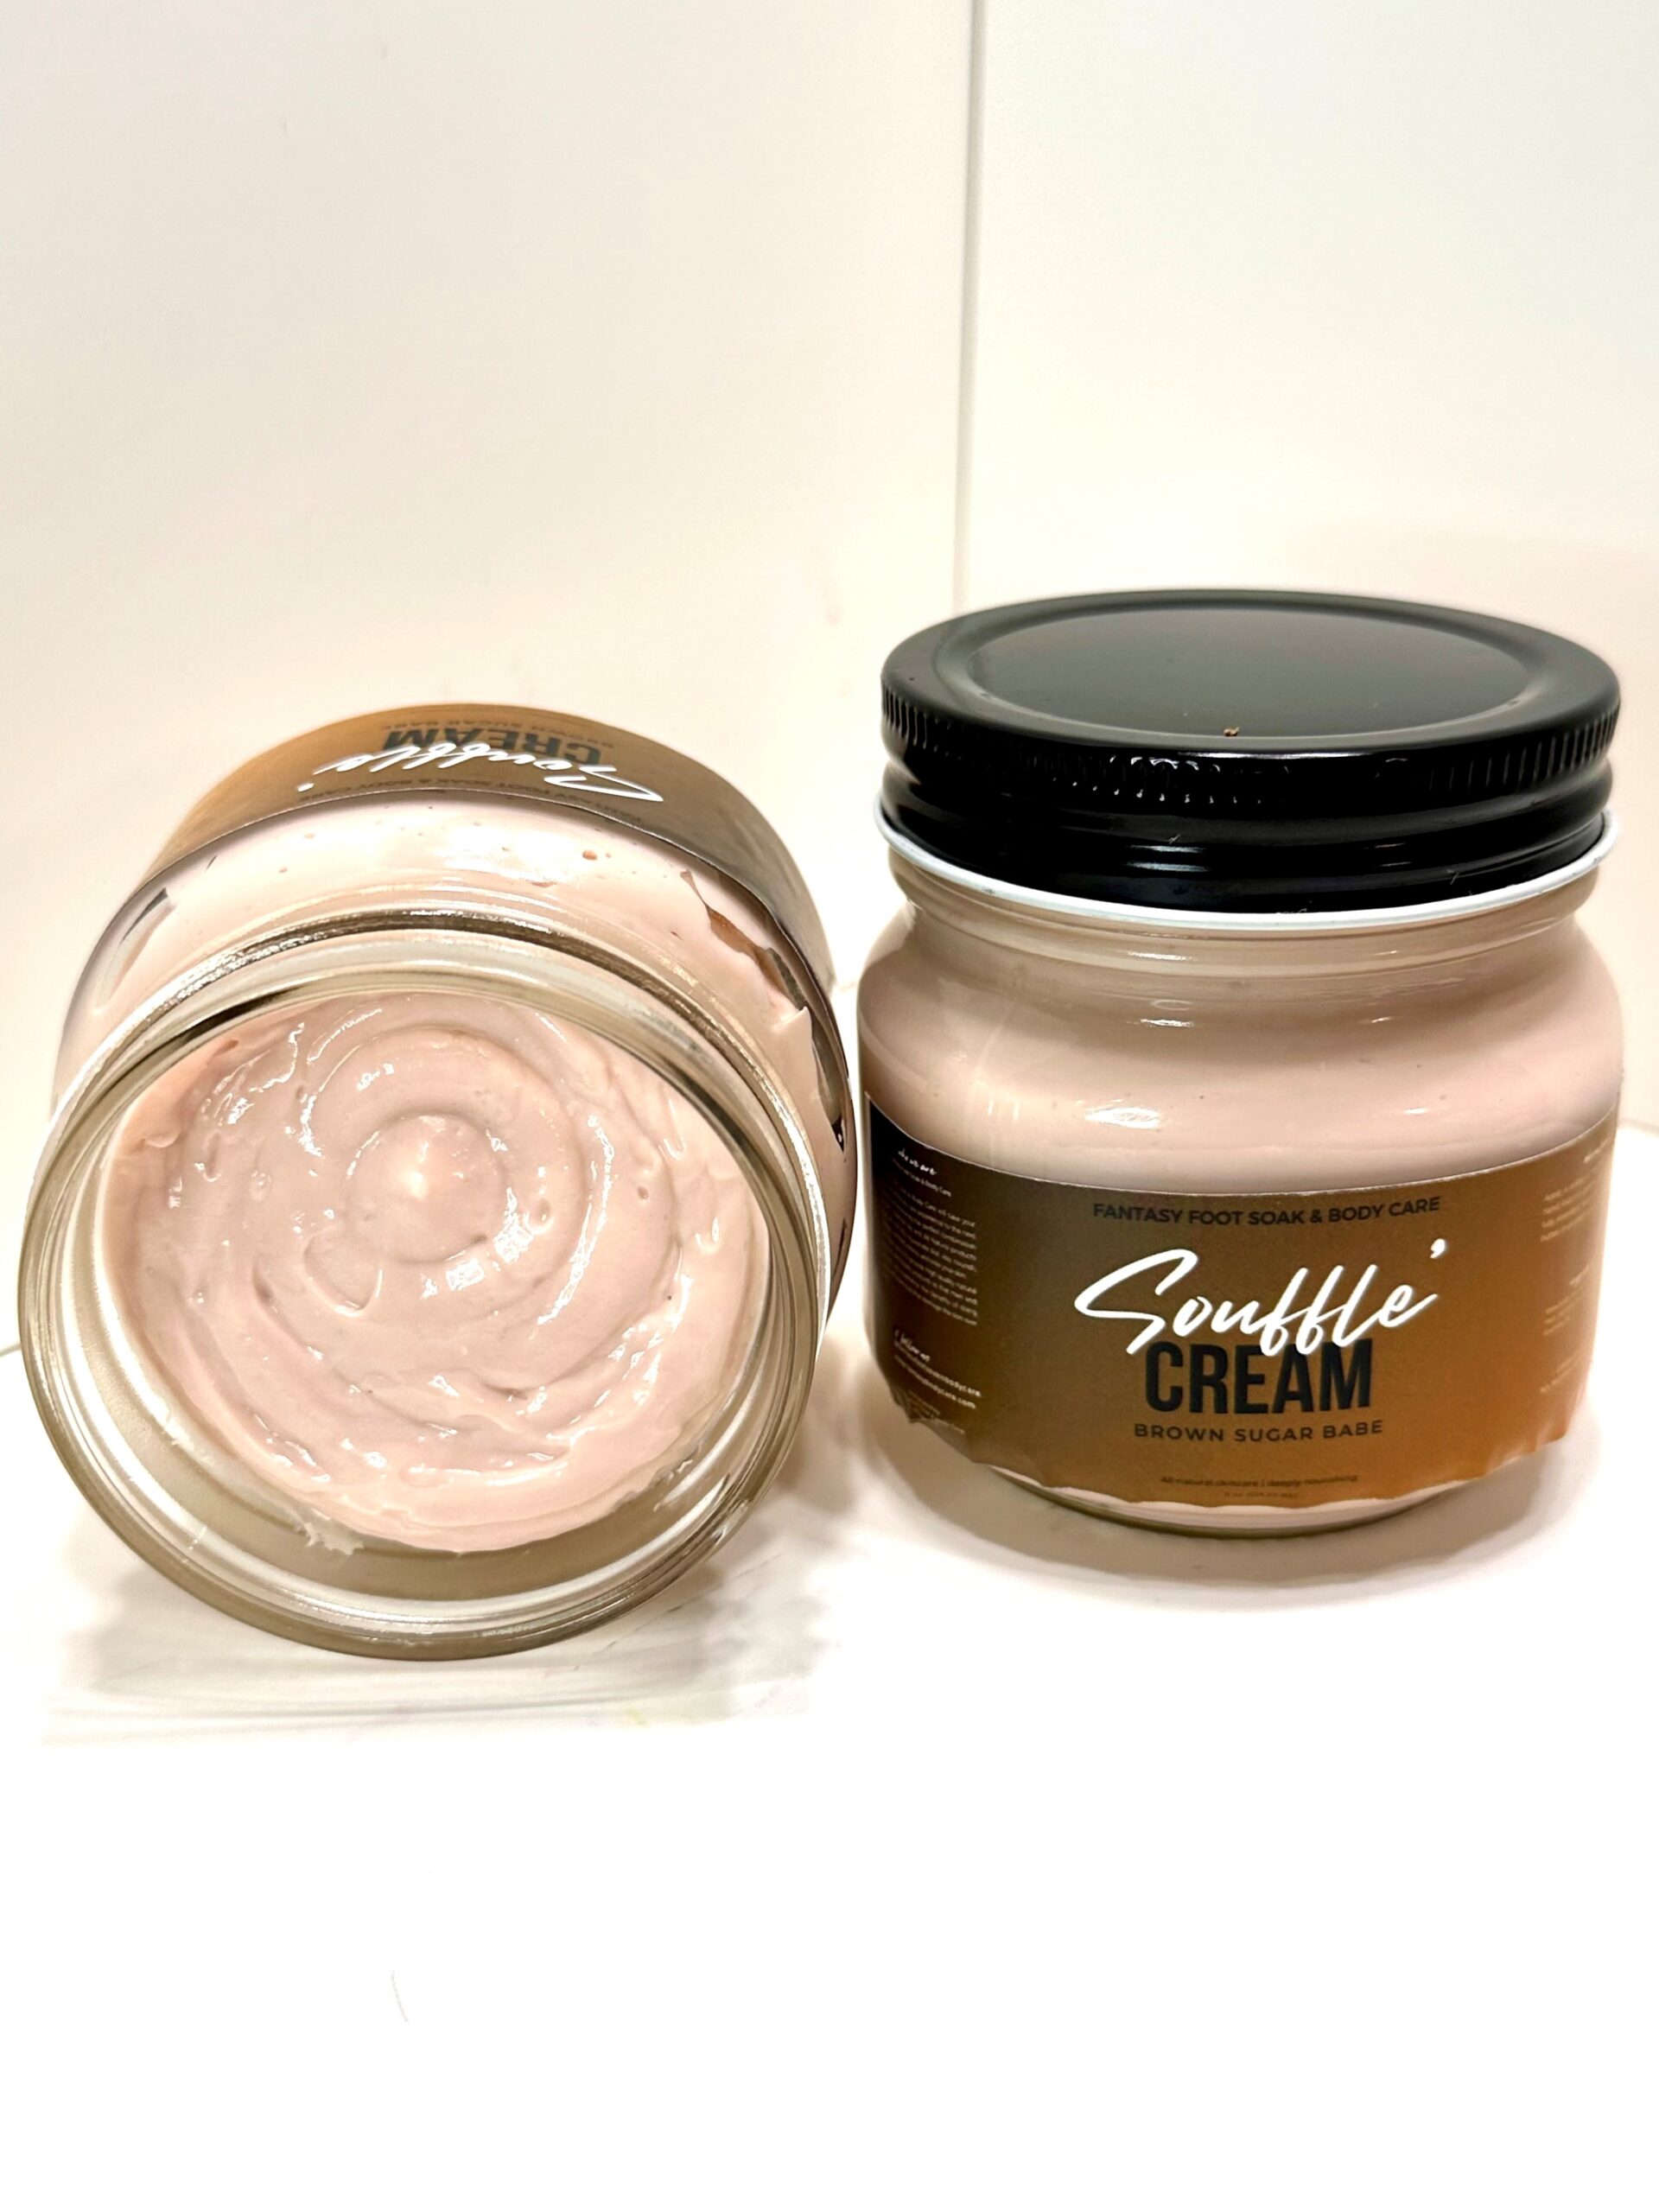 Fantasy Foot Soak & Body Care's Aromatherapy Body Soufflé Cream in the Brown Sugar Babe scent. 